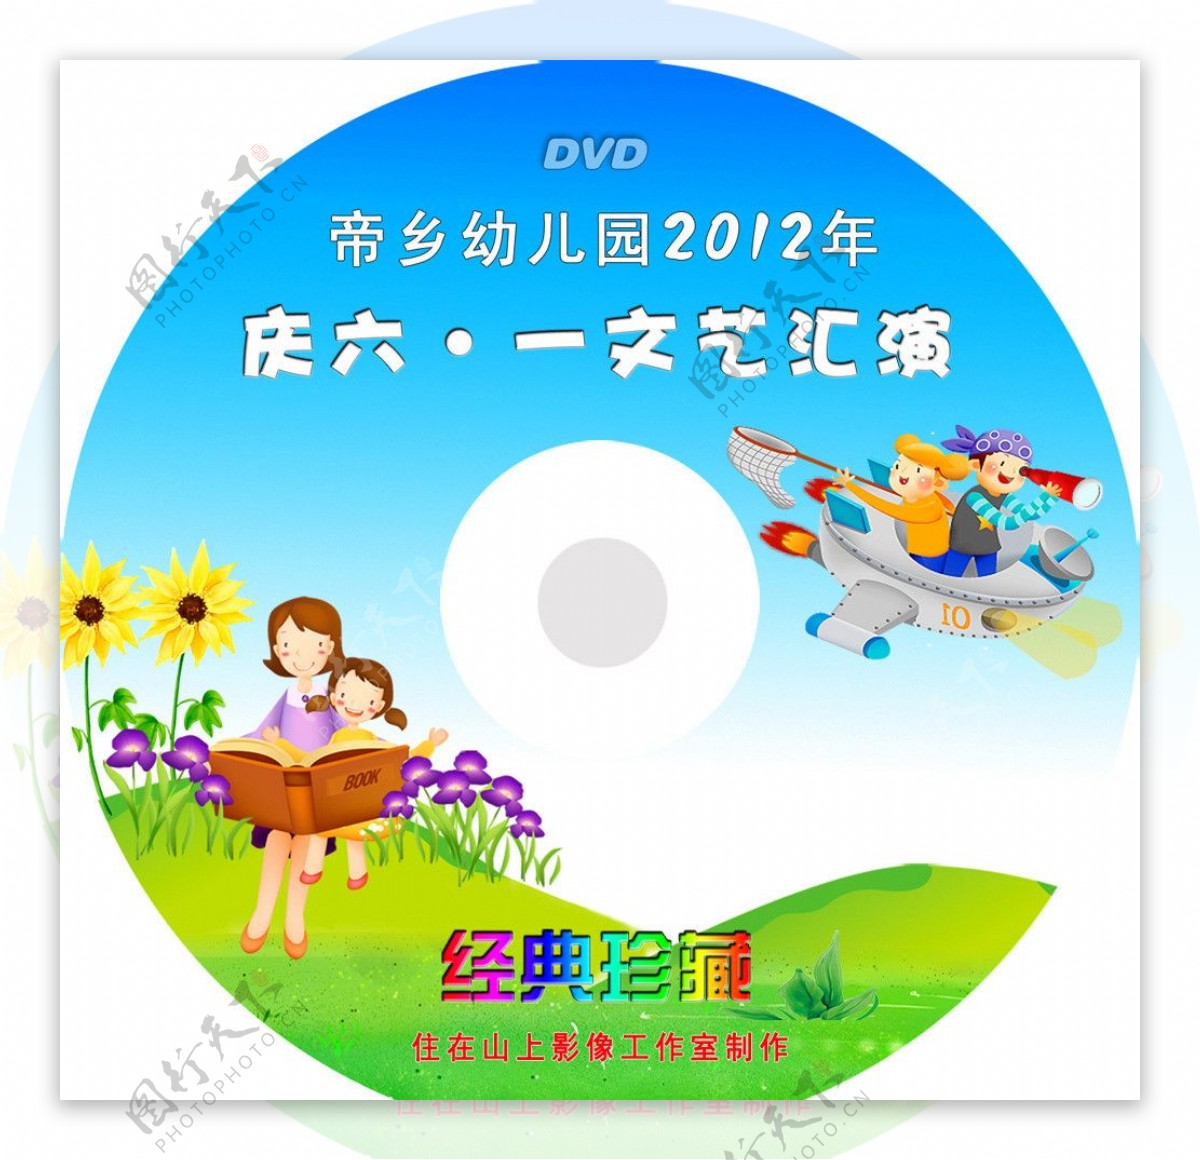 六一DVD光盘封面图片